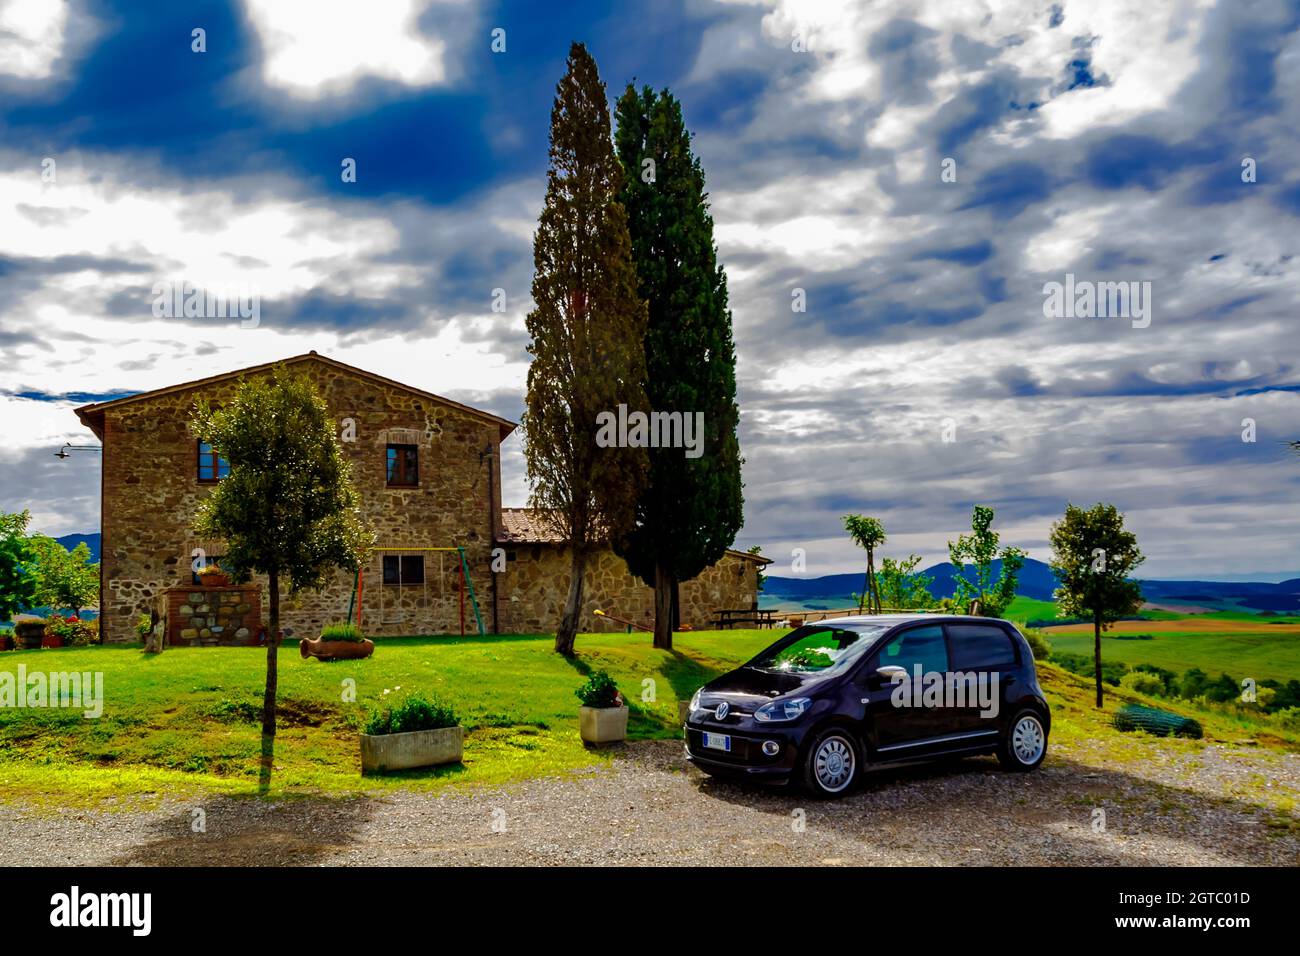 Reisen Sie in der Toskana. Landschaftlich reizvolle Landschaft der Toskana mit sanften Hügeln, Toskana, Italien. Stockfoto